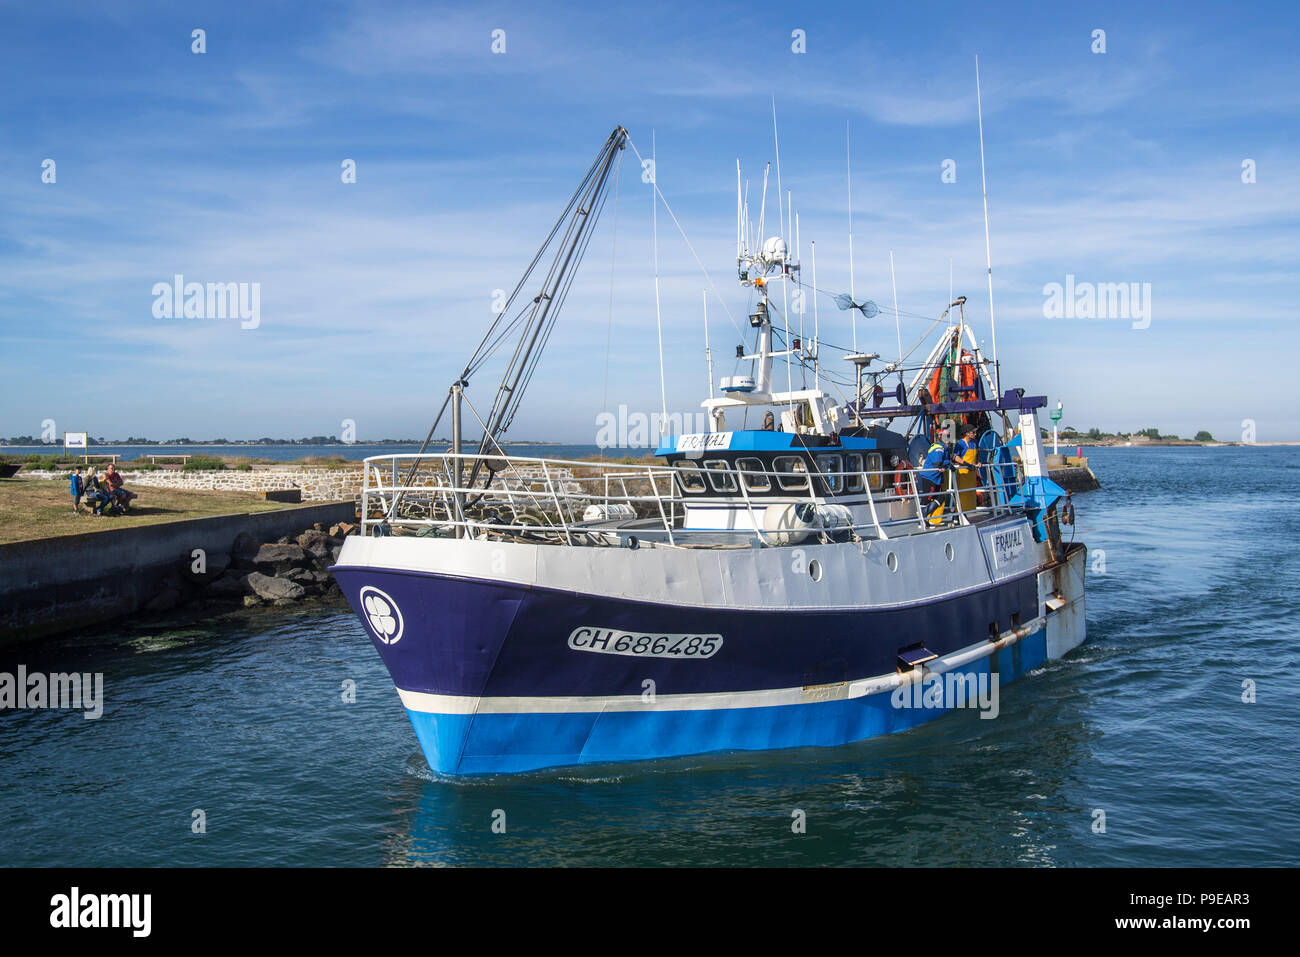 Bateau de pêche chalutier entrant dans le port de Saint-Vaast-la-Hougue, Manche, Normandie, France Banque D'Images